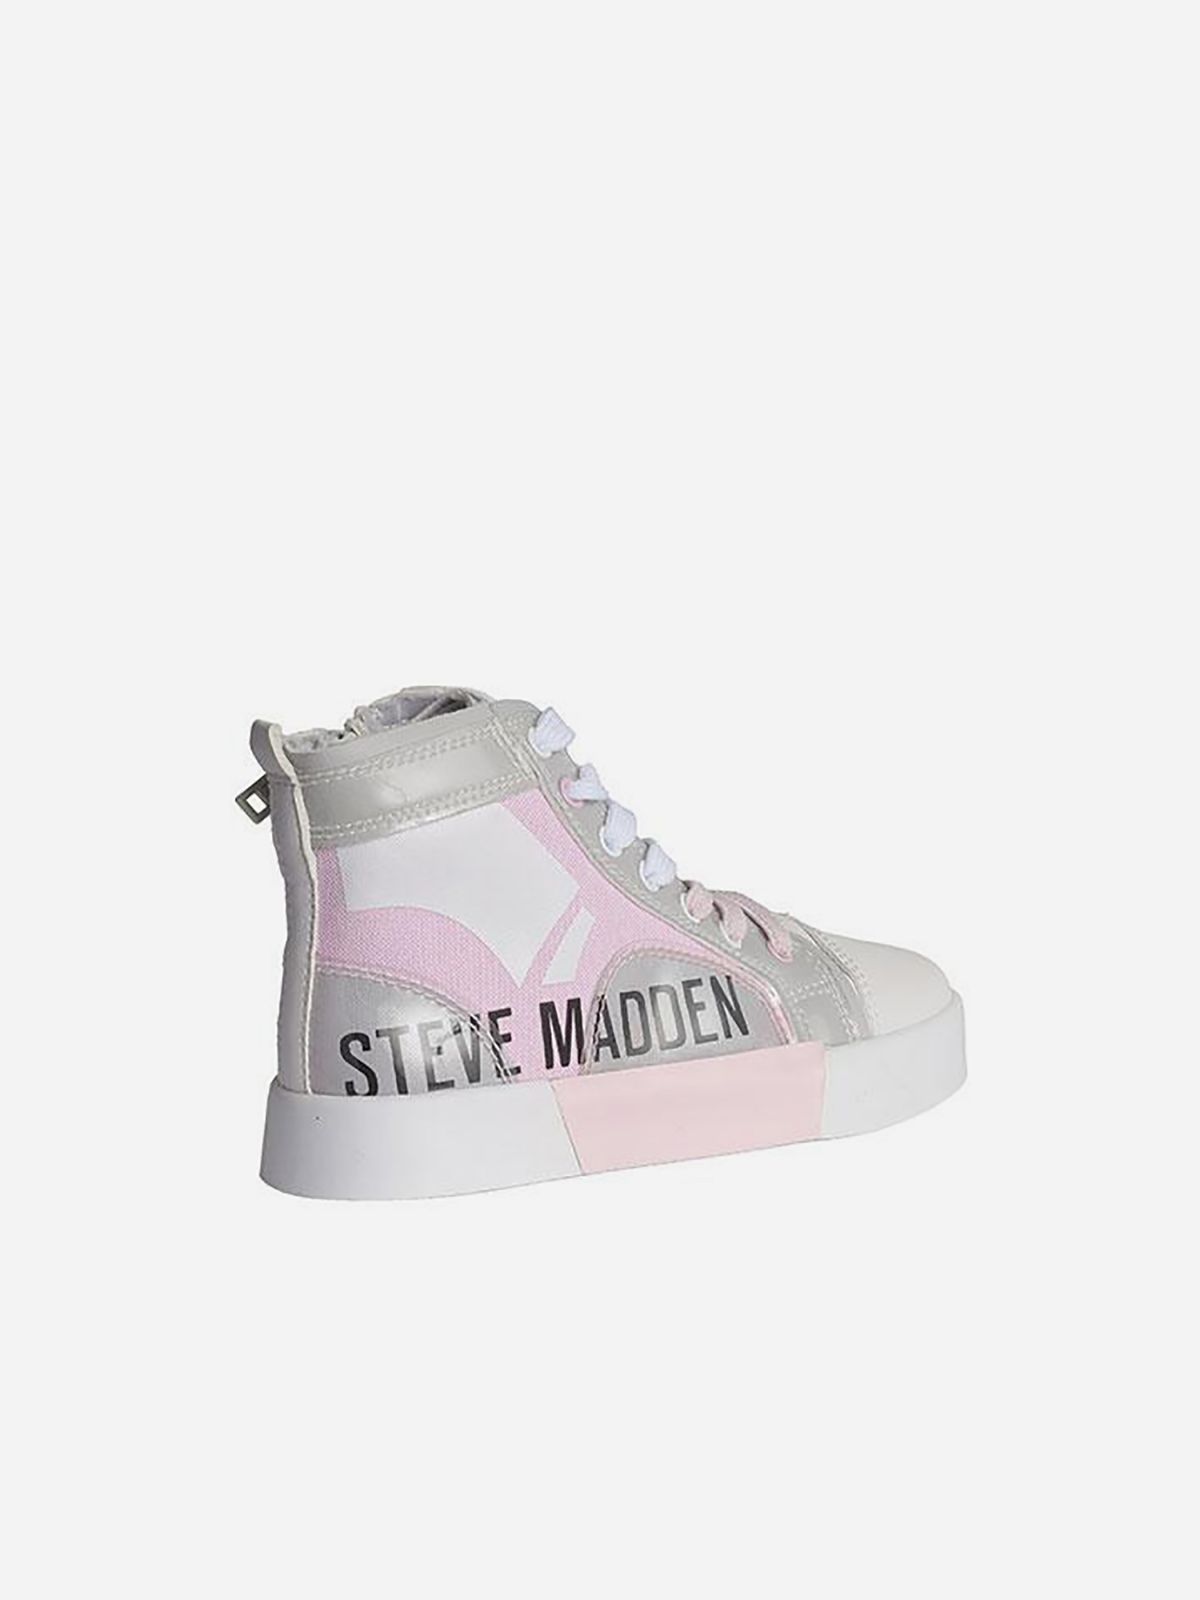  נעלי סניקרס גבוהות עם הדפס לוגו / בנות של STEVE MADDEN